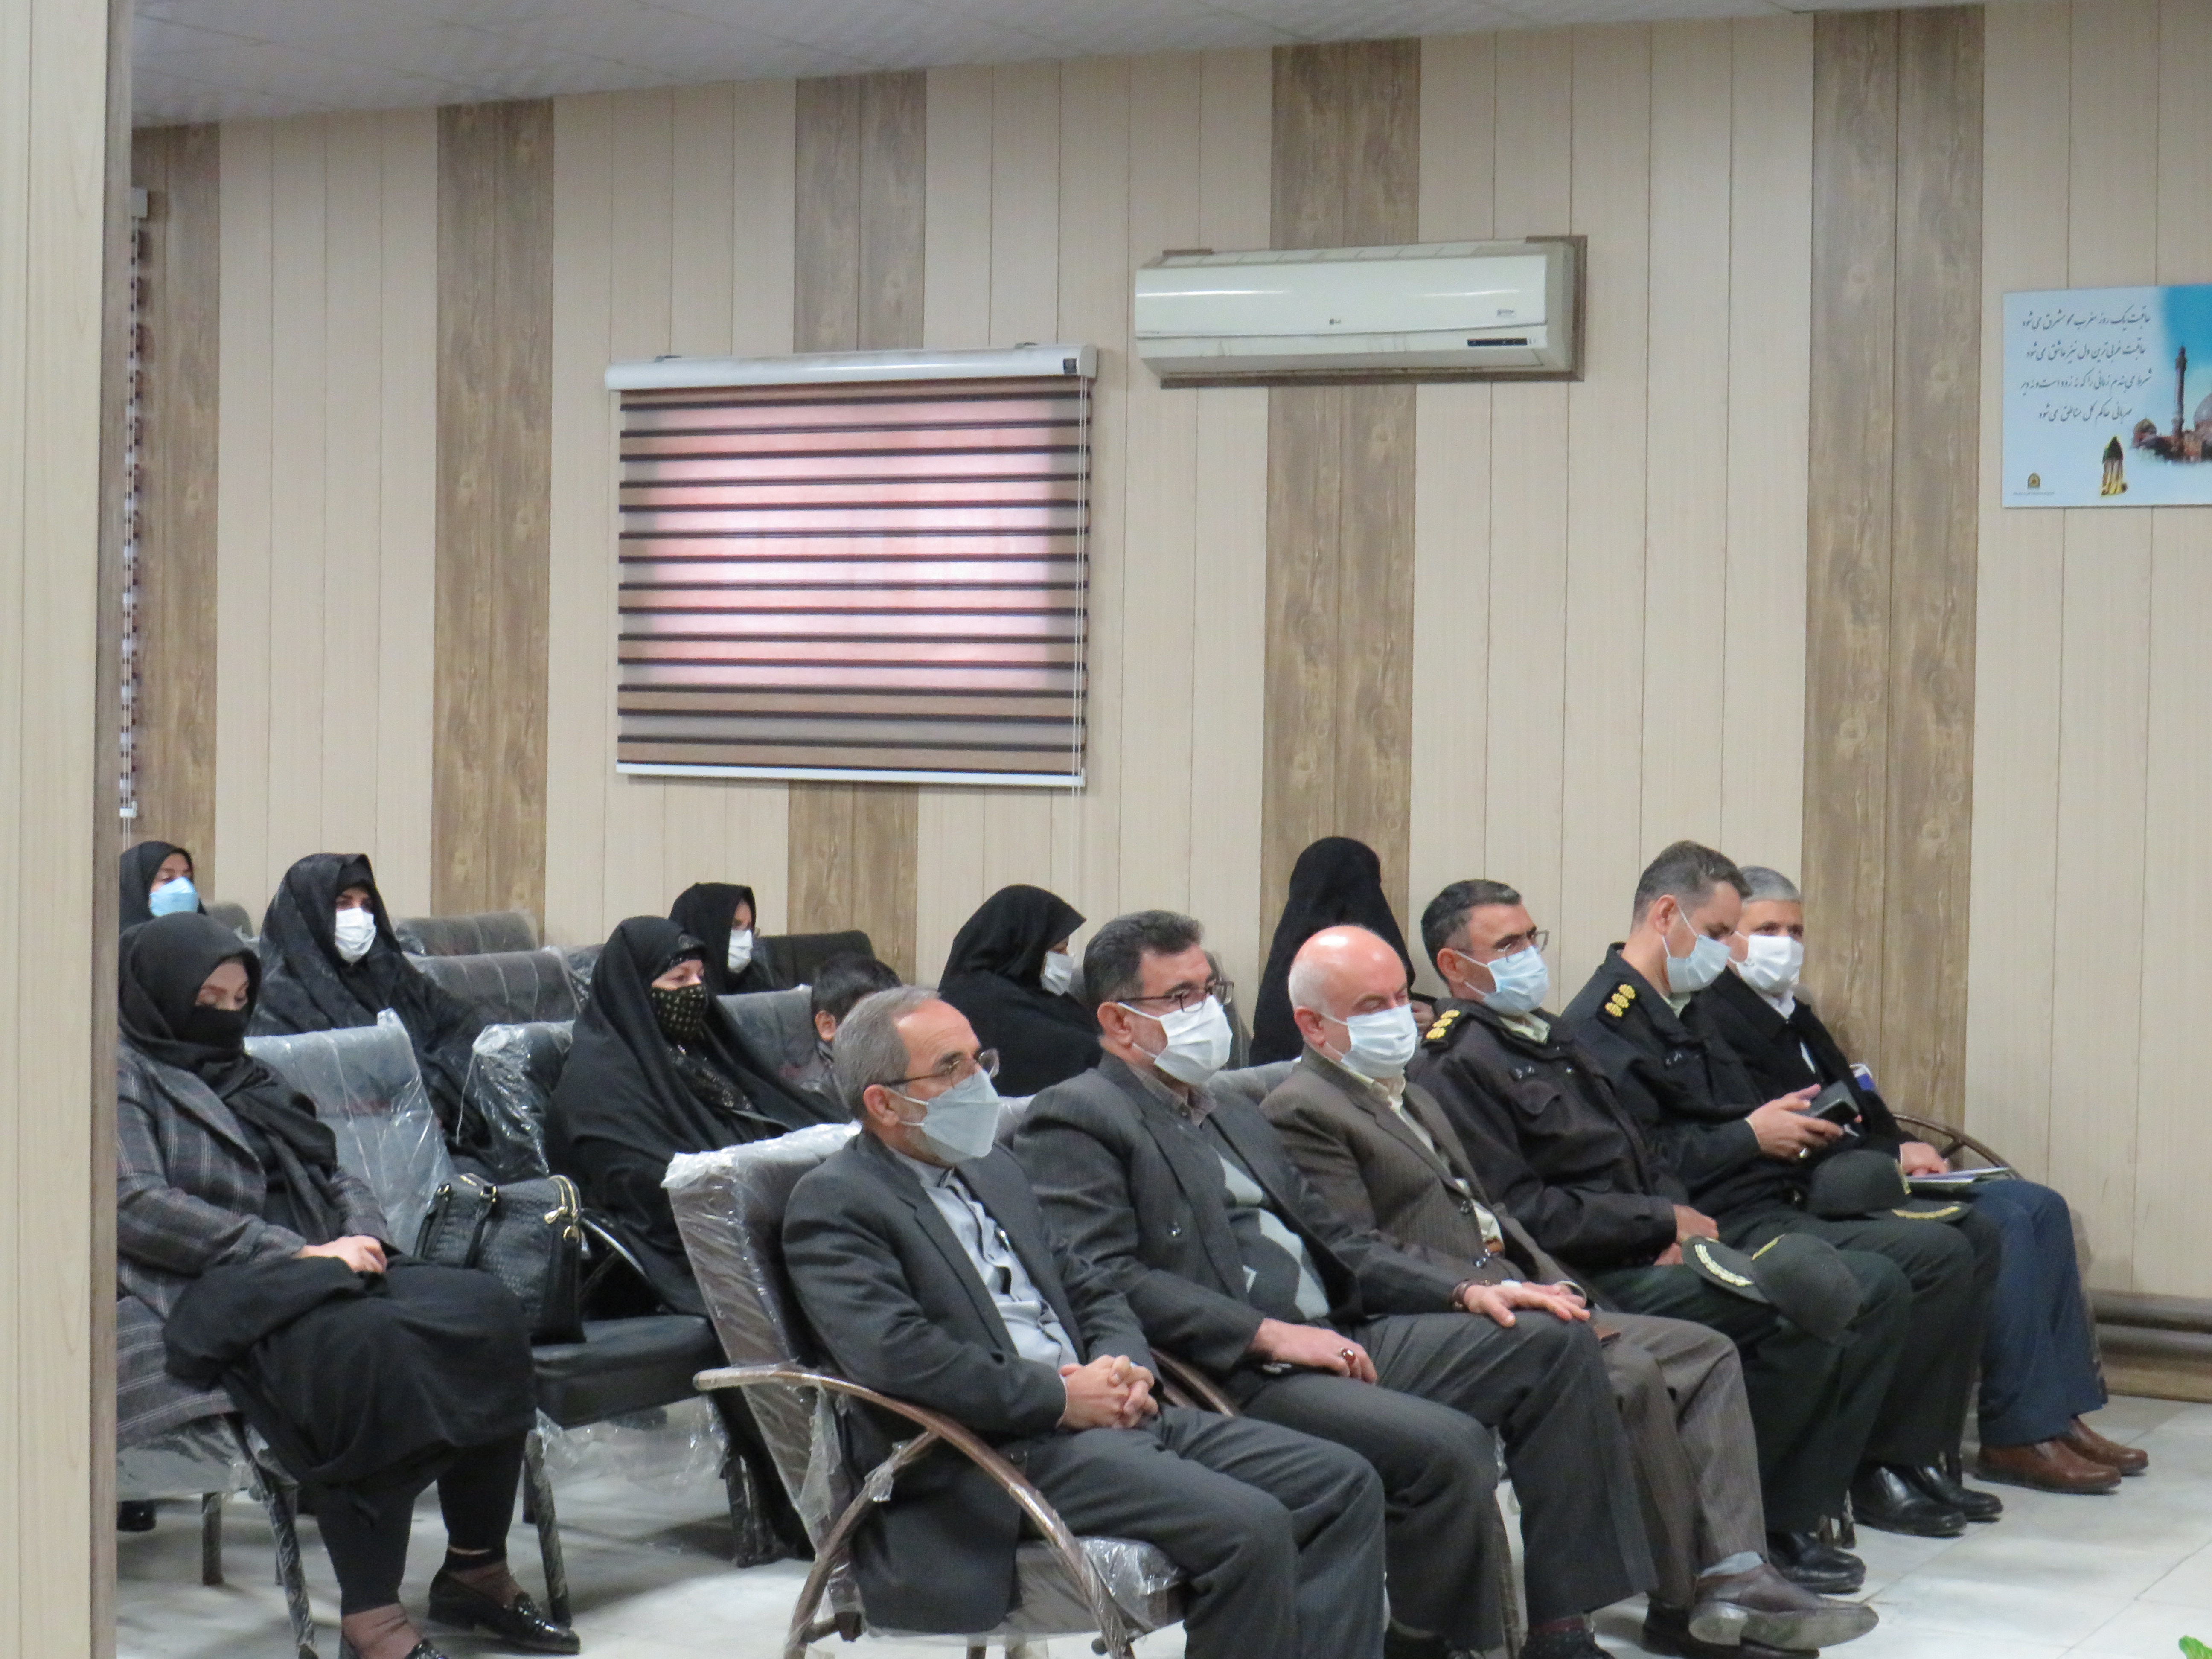 برگزاری مراسم تجلیل از تعداد 20 نفر از بازنشستگان زن به مناسبت میلاد حضرت زهرا (س) و روز زن در استان کرمانشاه